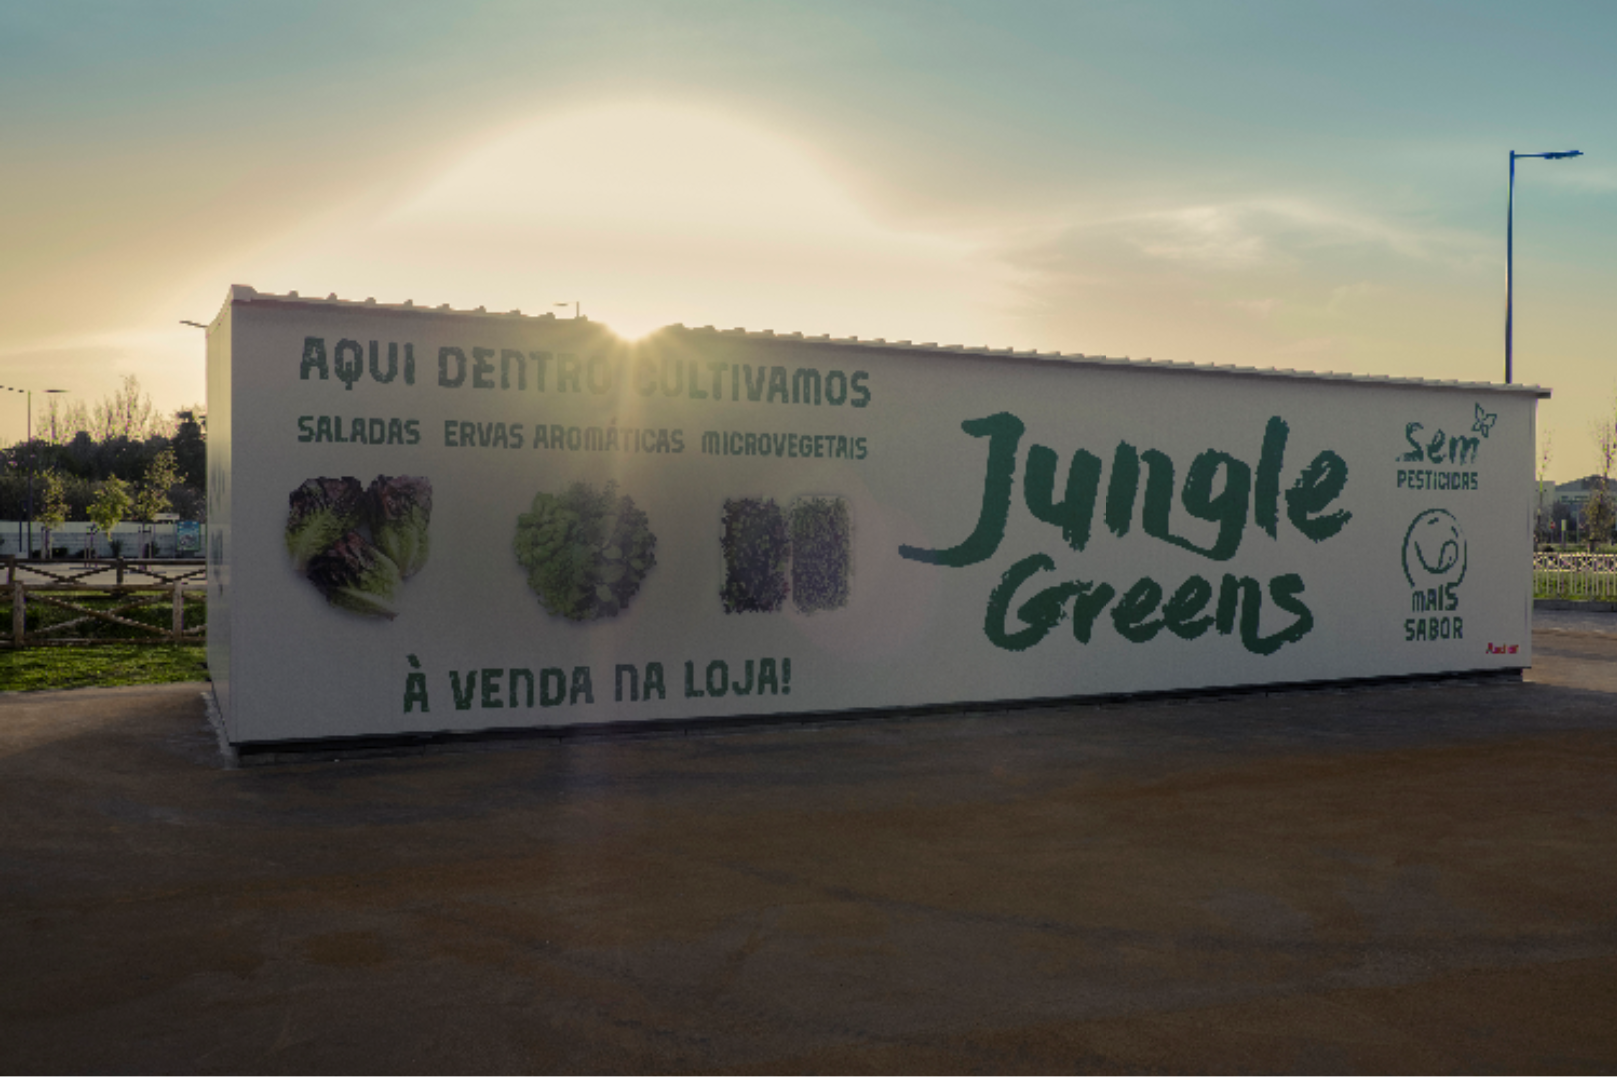 Jungle Box Vertical Farm 1.png